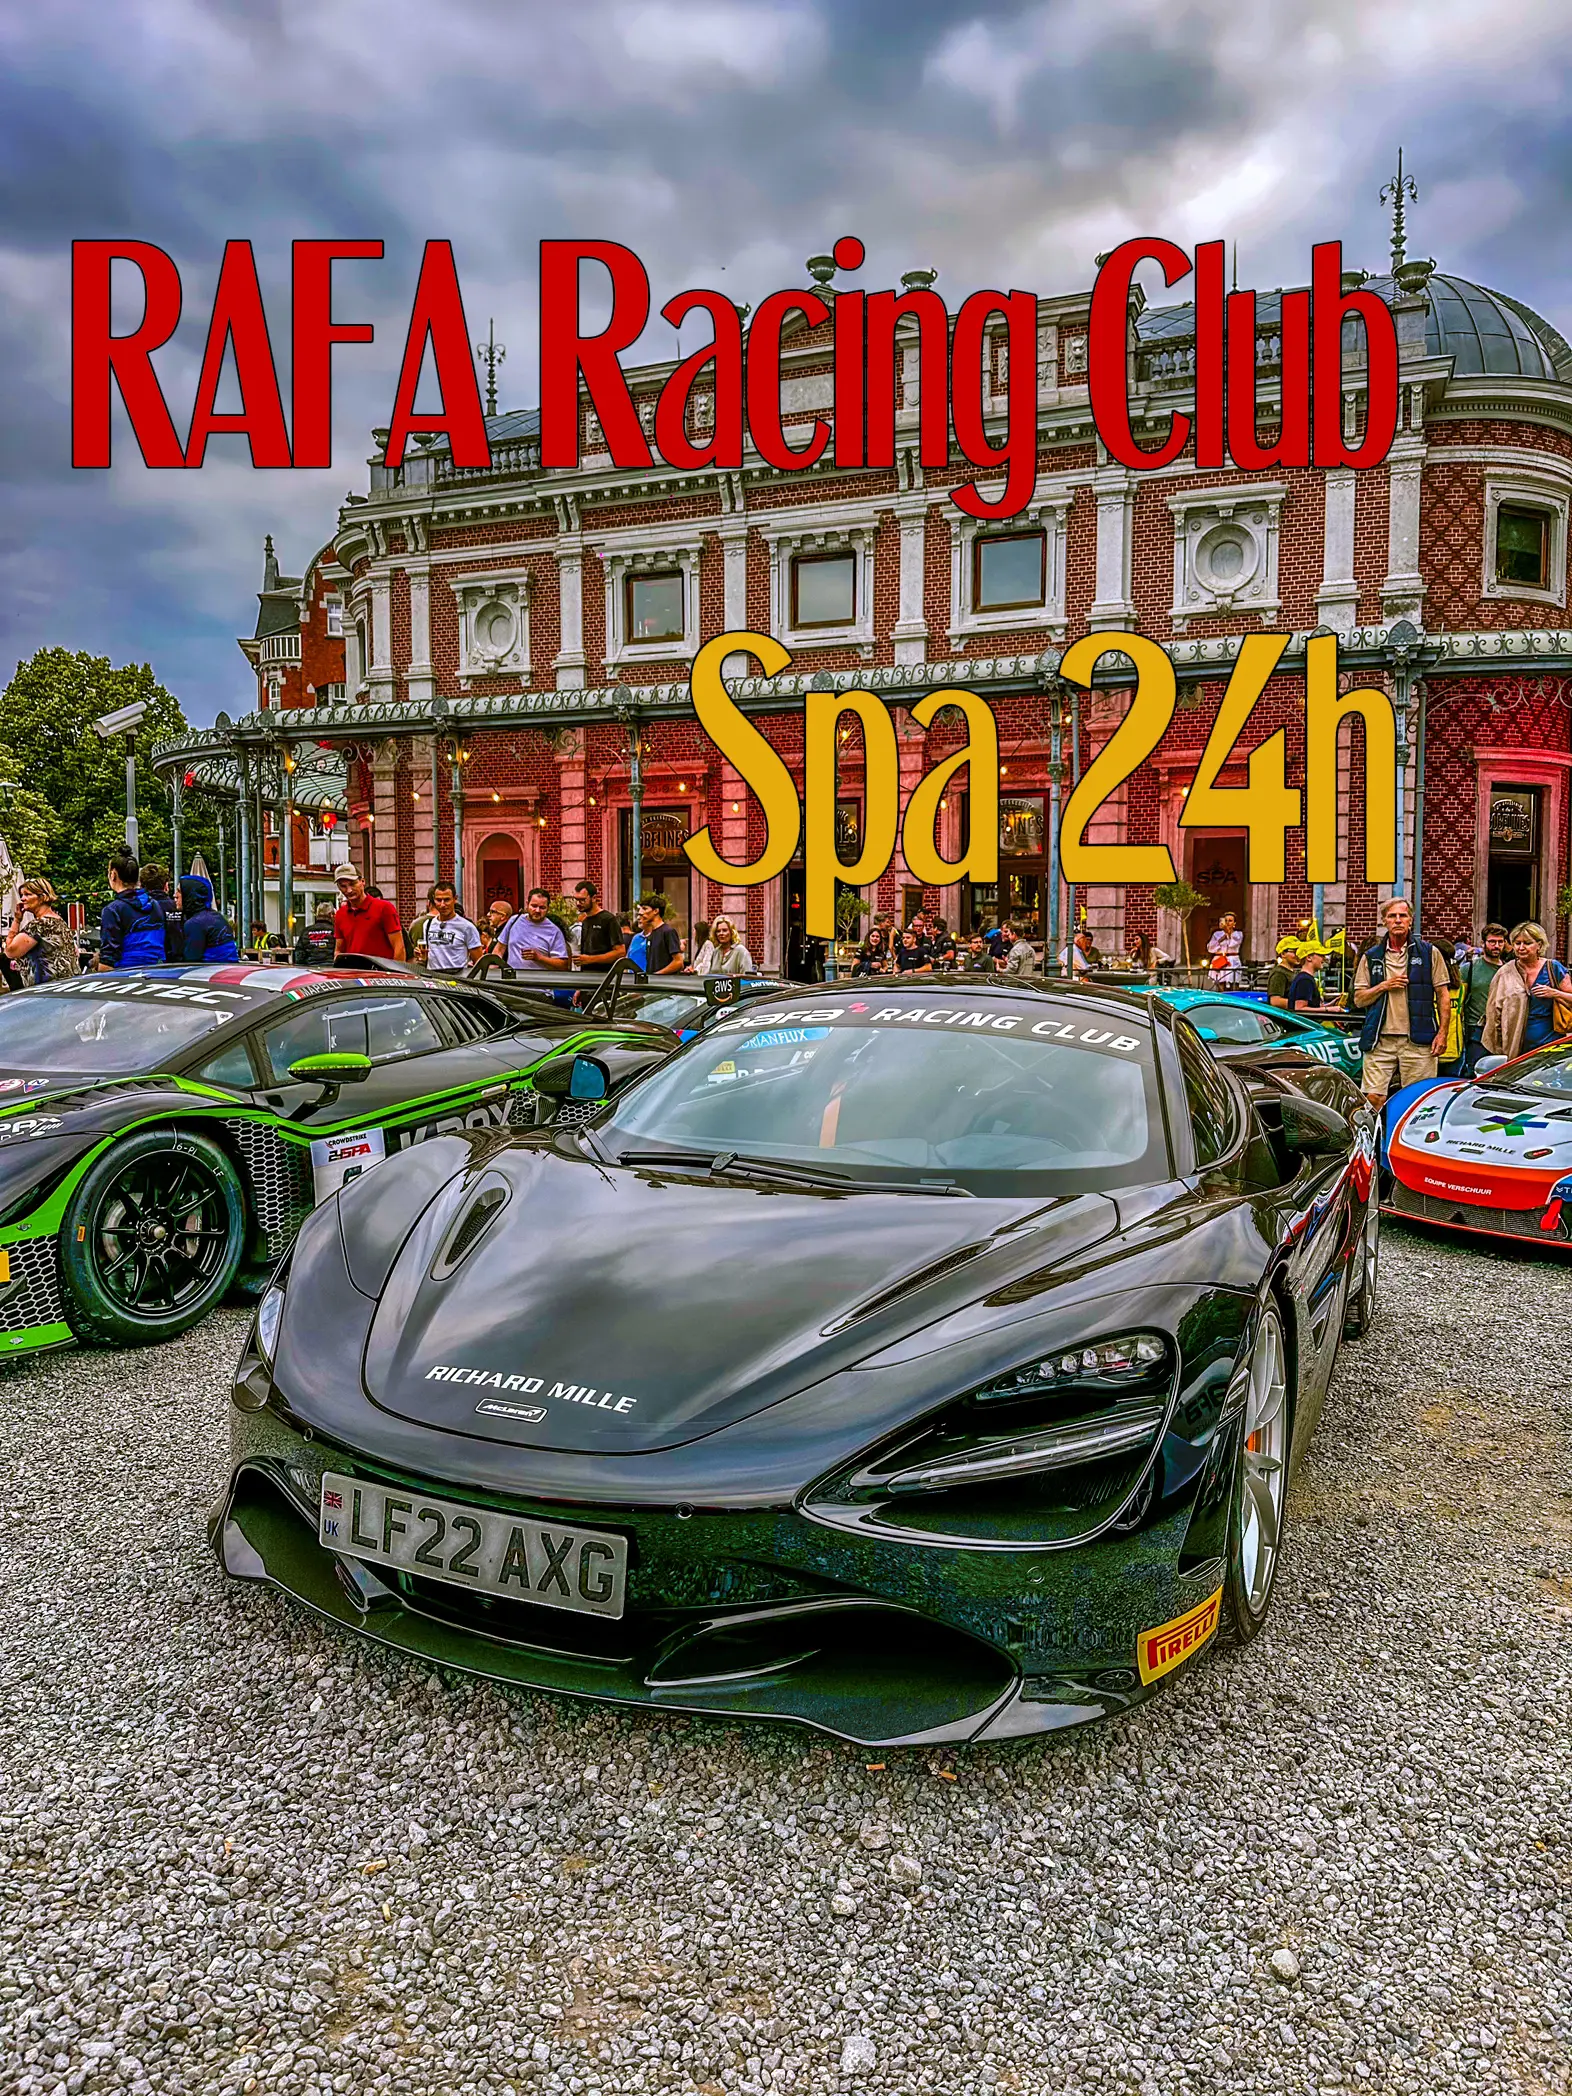 About - RAFA Racing Club